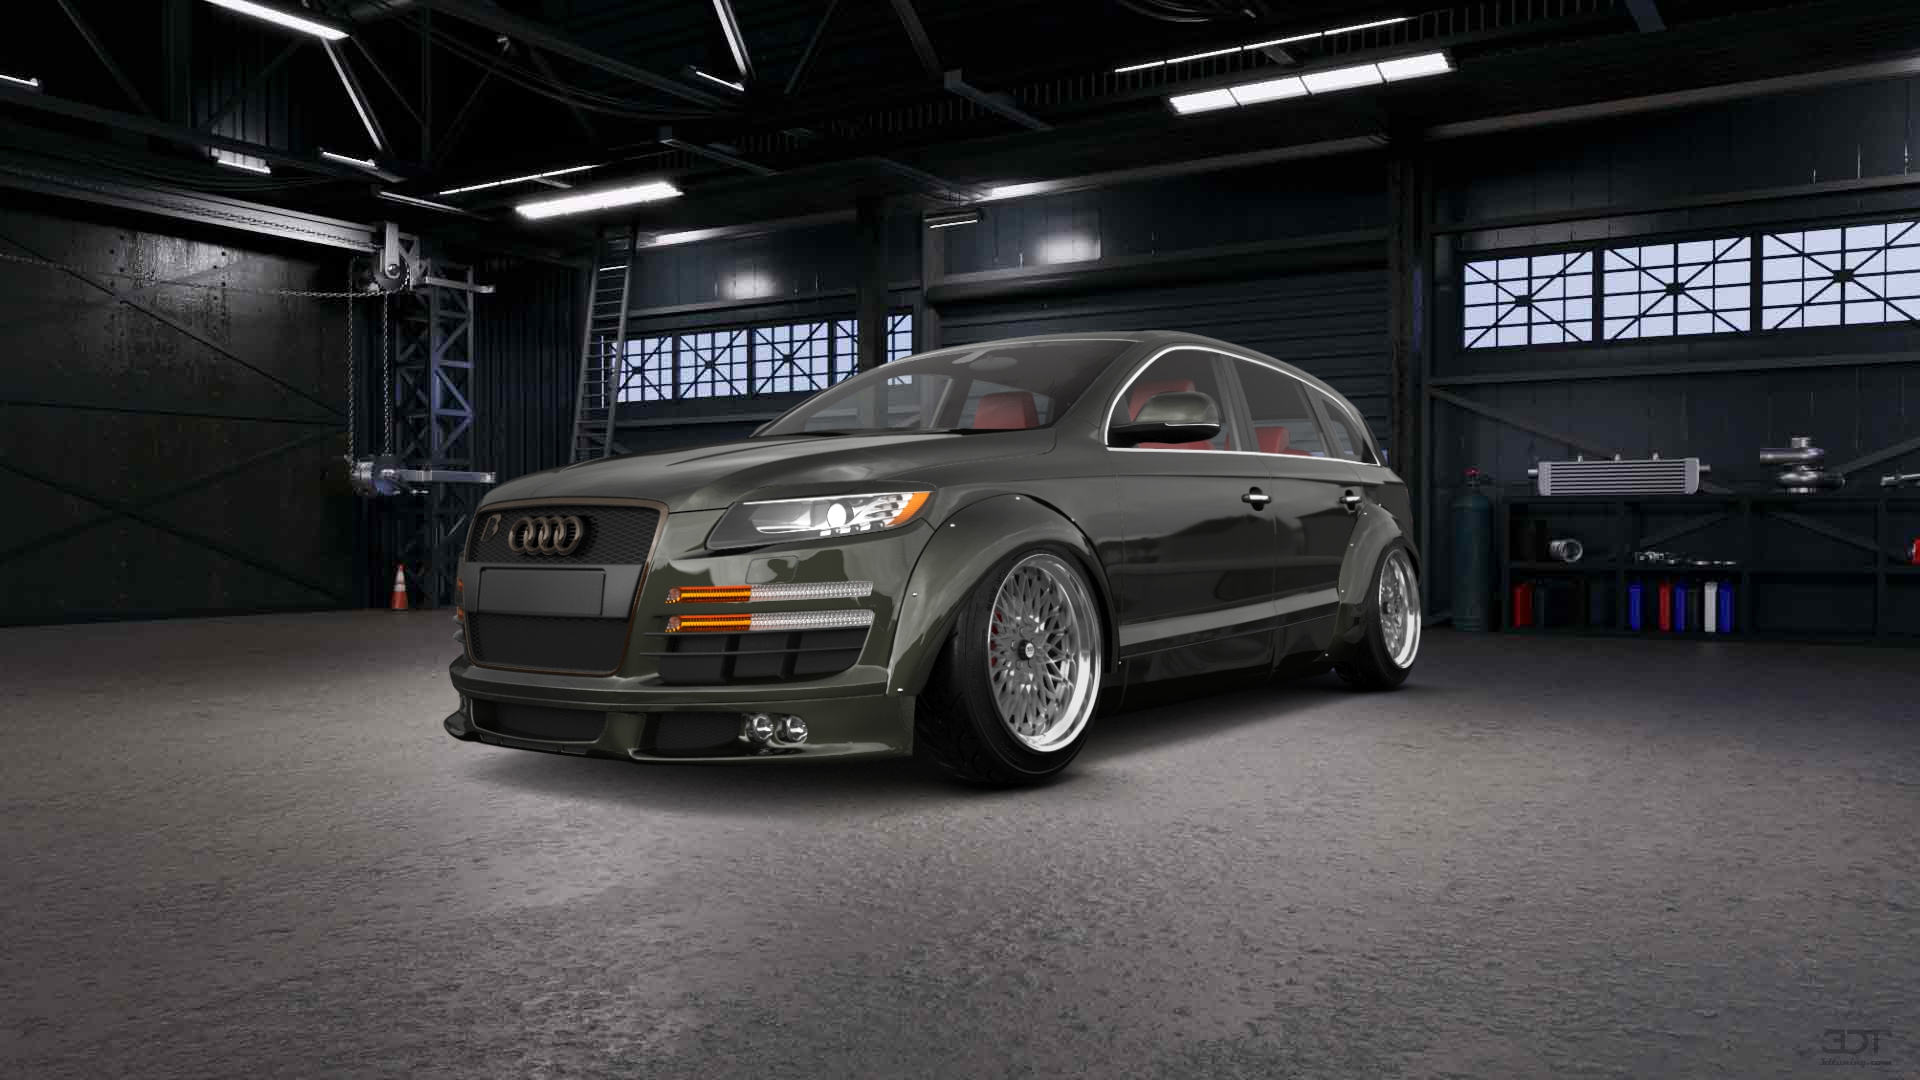 Audi Q7 Luxury SUV 2010 tuning